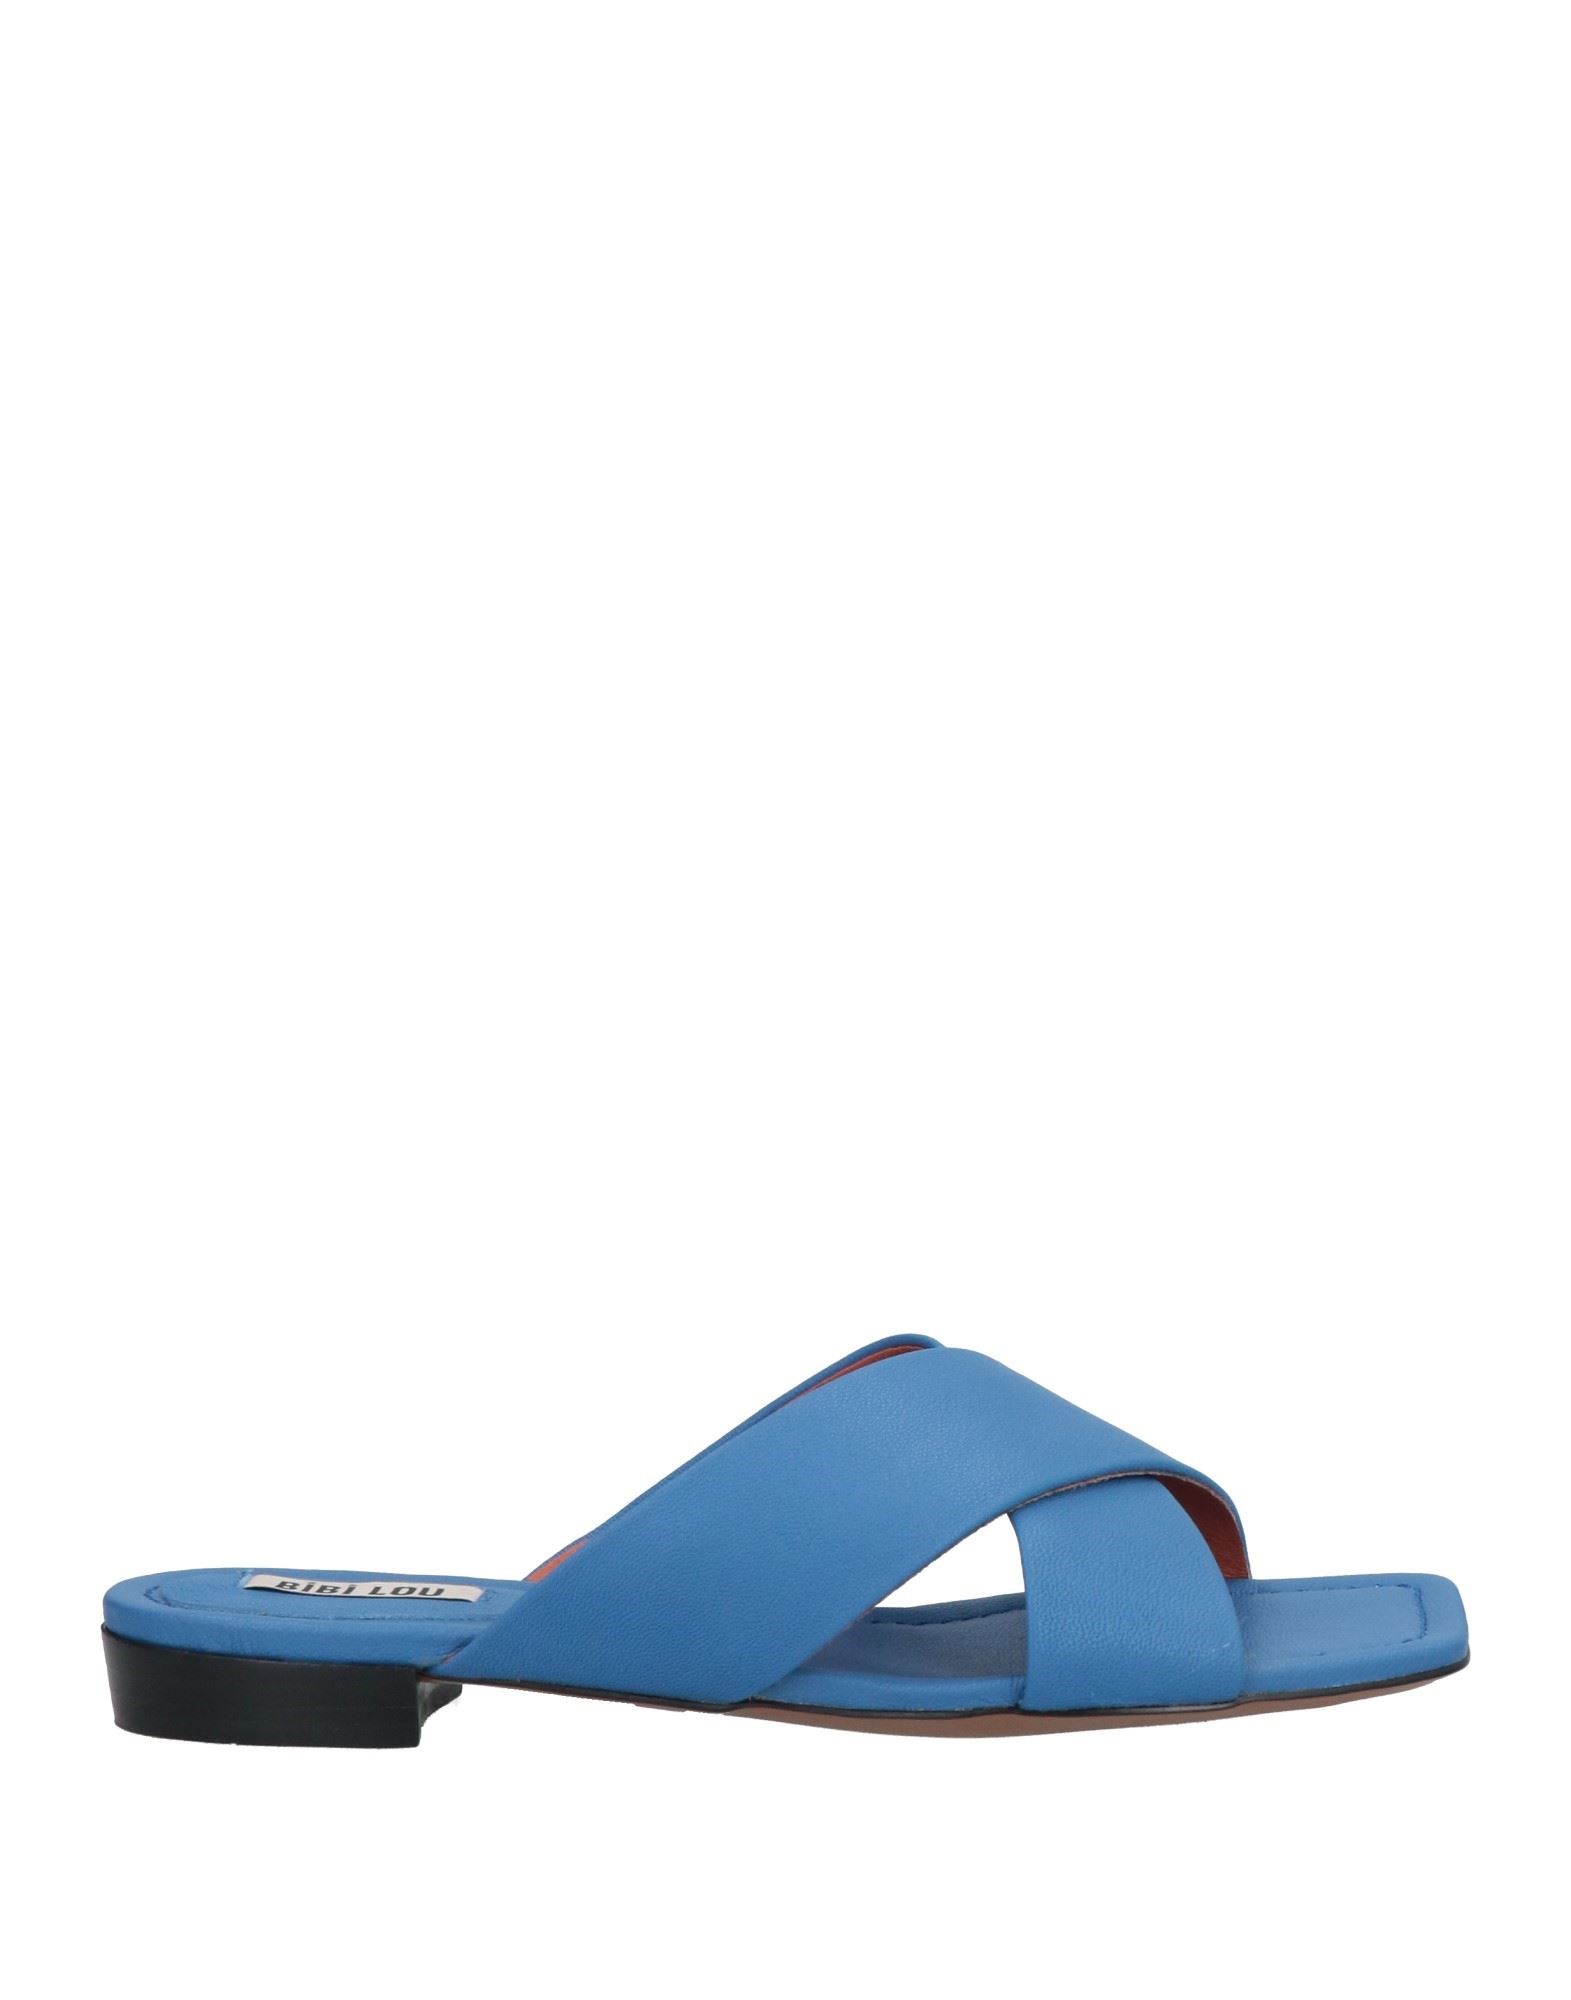 Bibi Lou Sandals In Blue